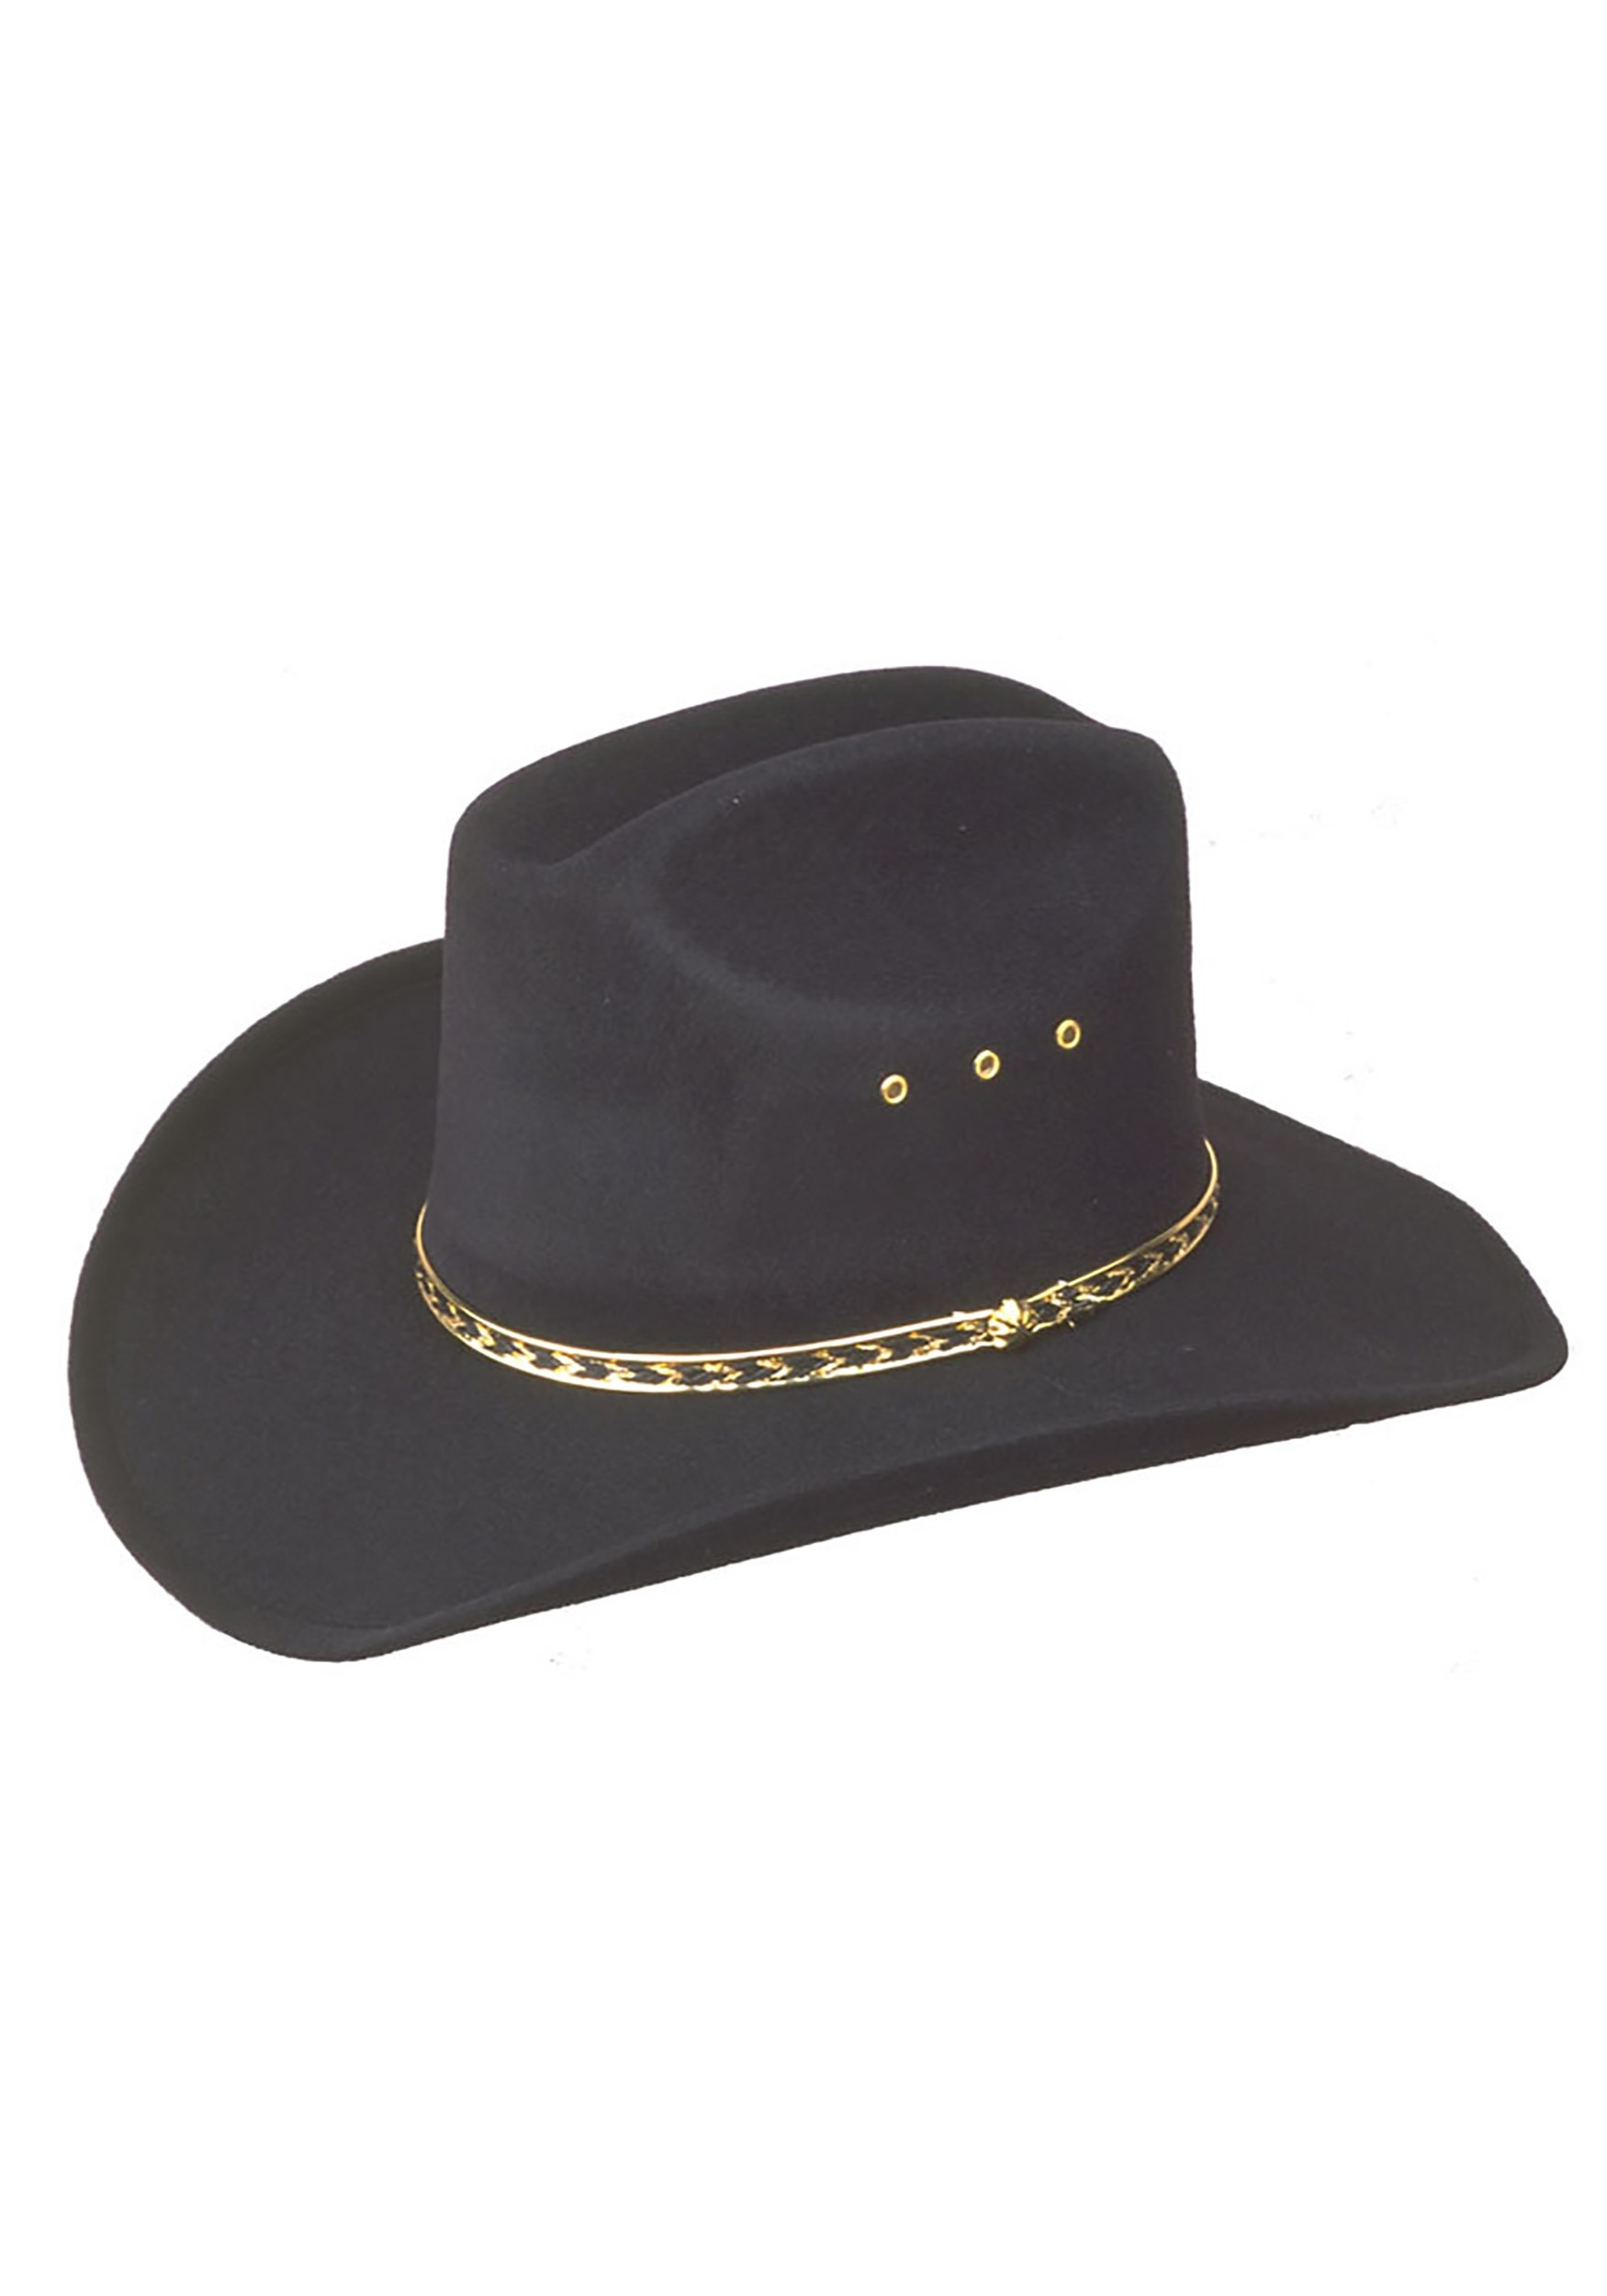 Black Cowboy Hat for Kids